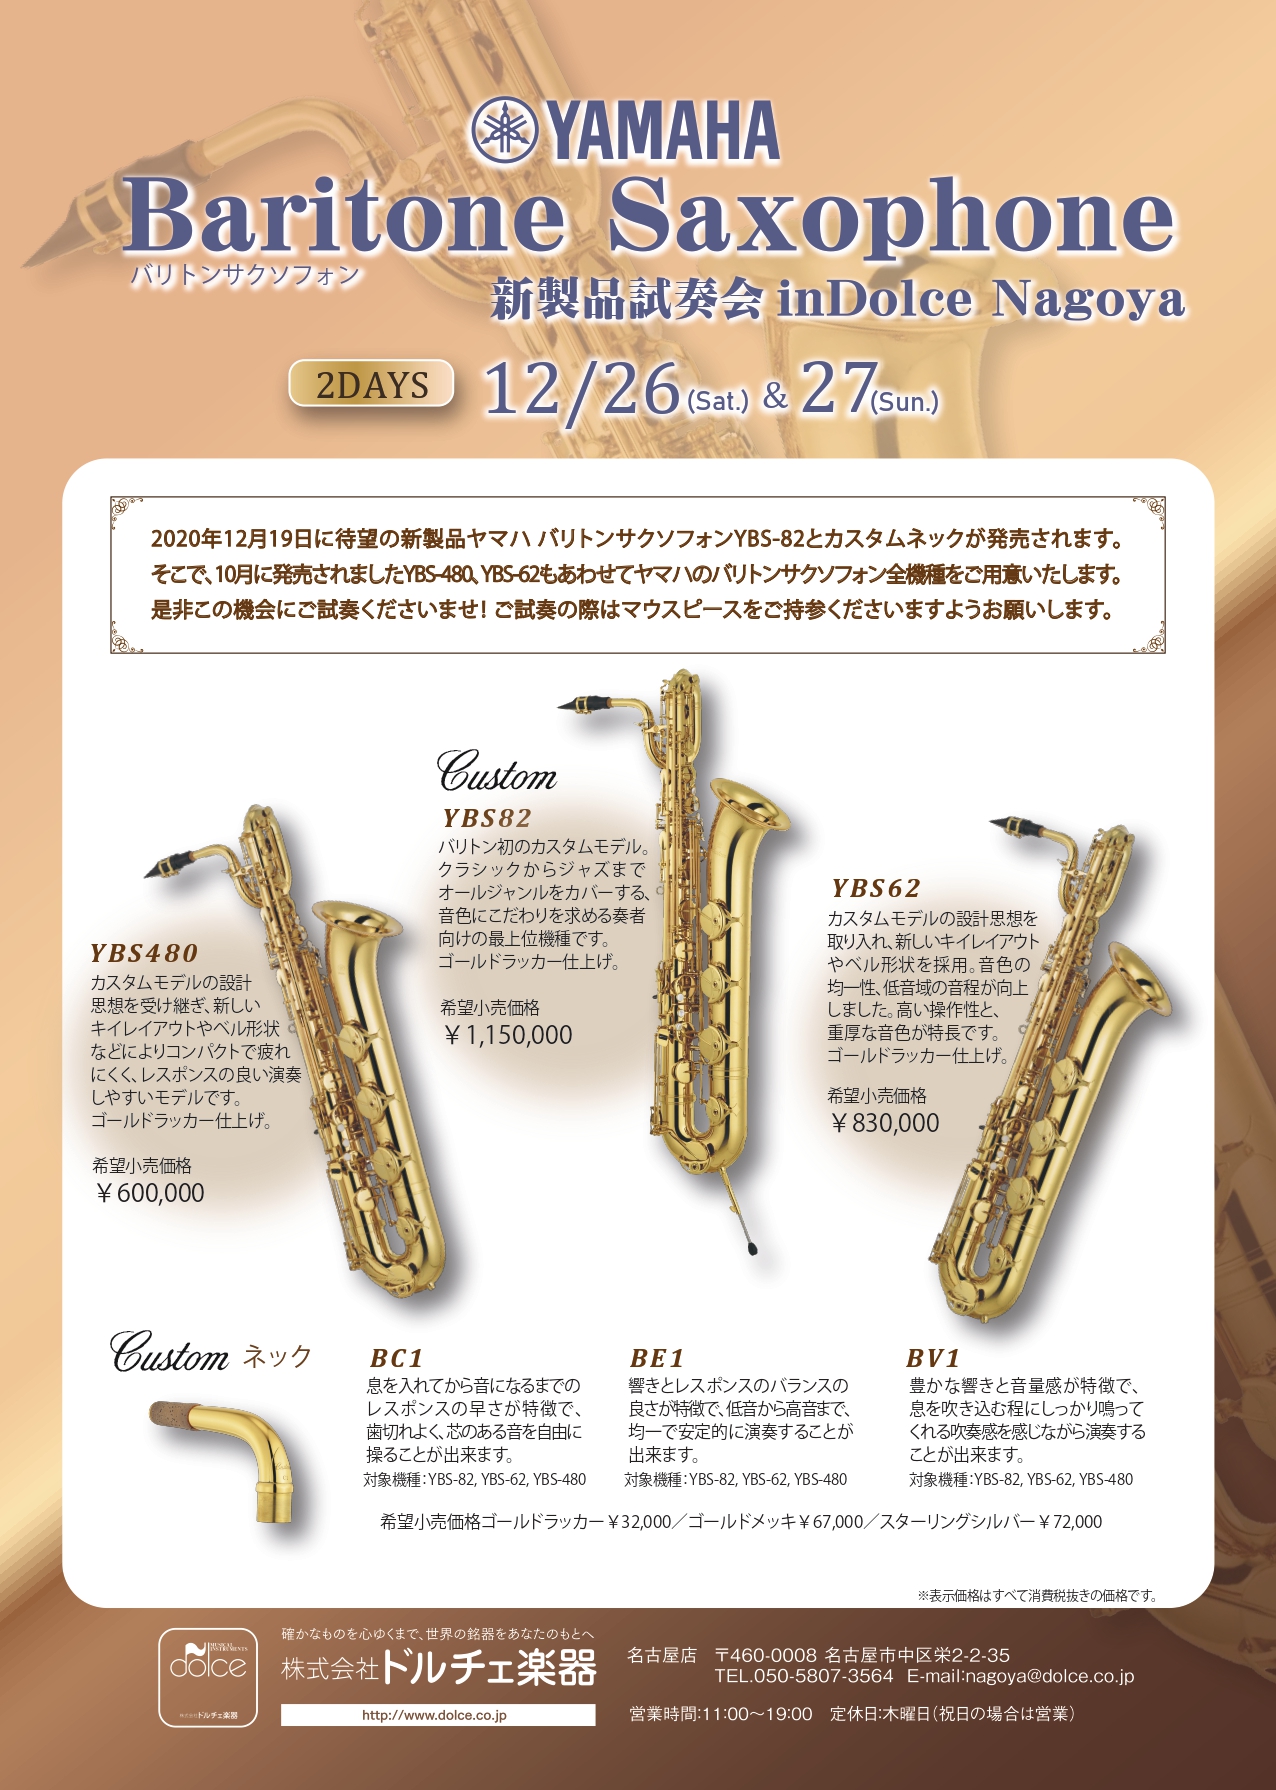 名古屋店 Yamaha バリトンサックス新製品試奏会 ドルチェ楽器